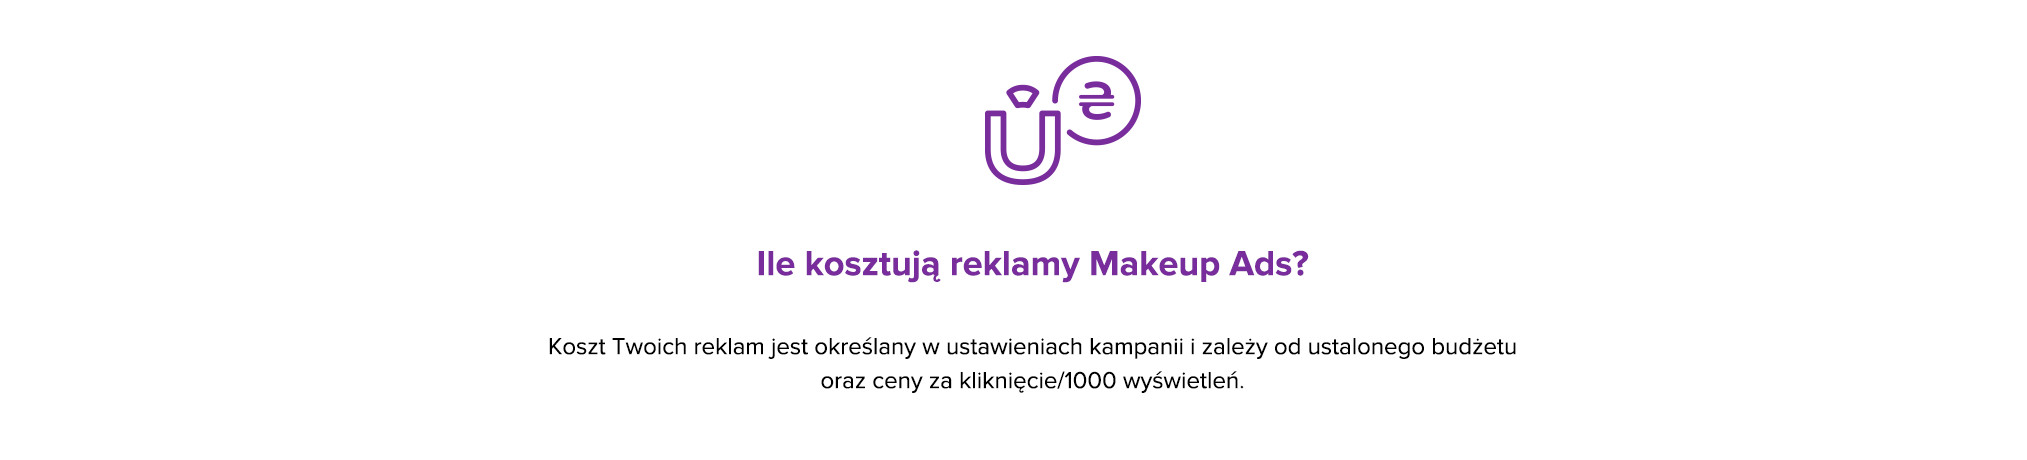 Makeup ads 